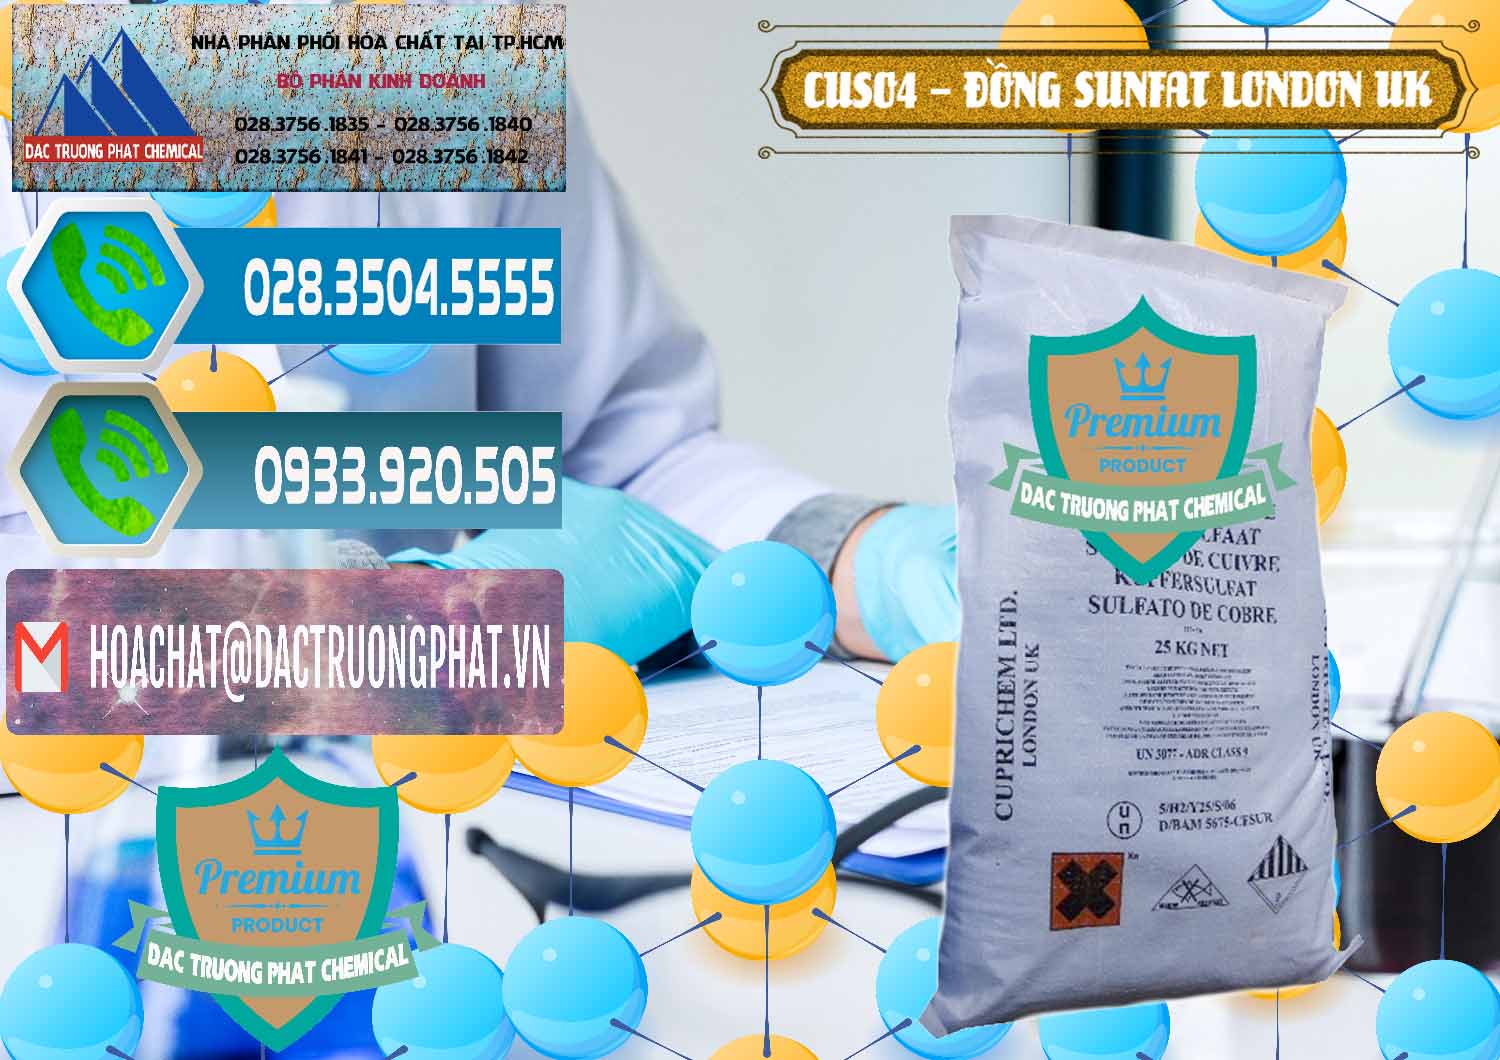 Cty chuyên phân phối _ bán CuSO4 – Đồng Sunfat Anh Uk Kingdoms - 0478 - Nhà cung cấp và phân phối hóa chất tại TP.HCM - congtyhoachat.net